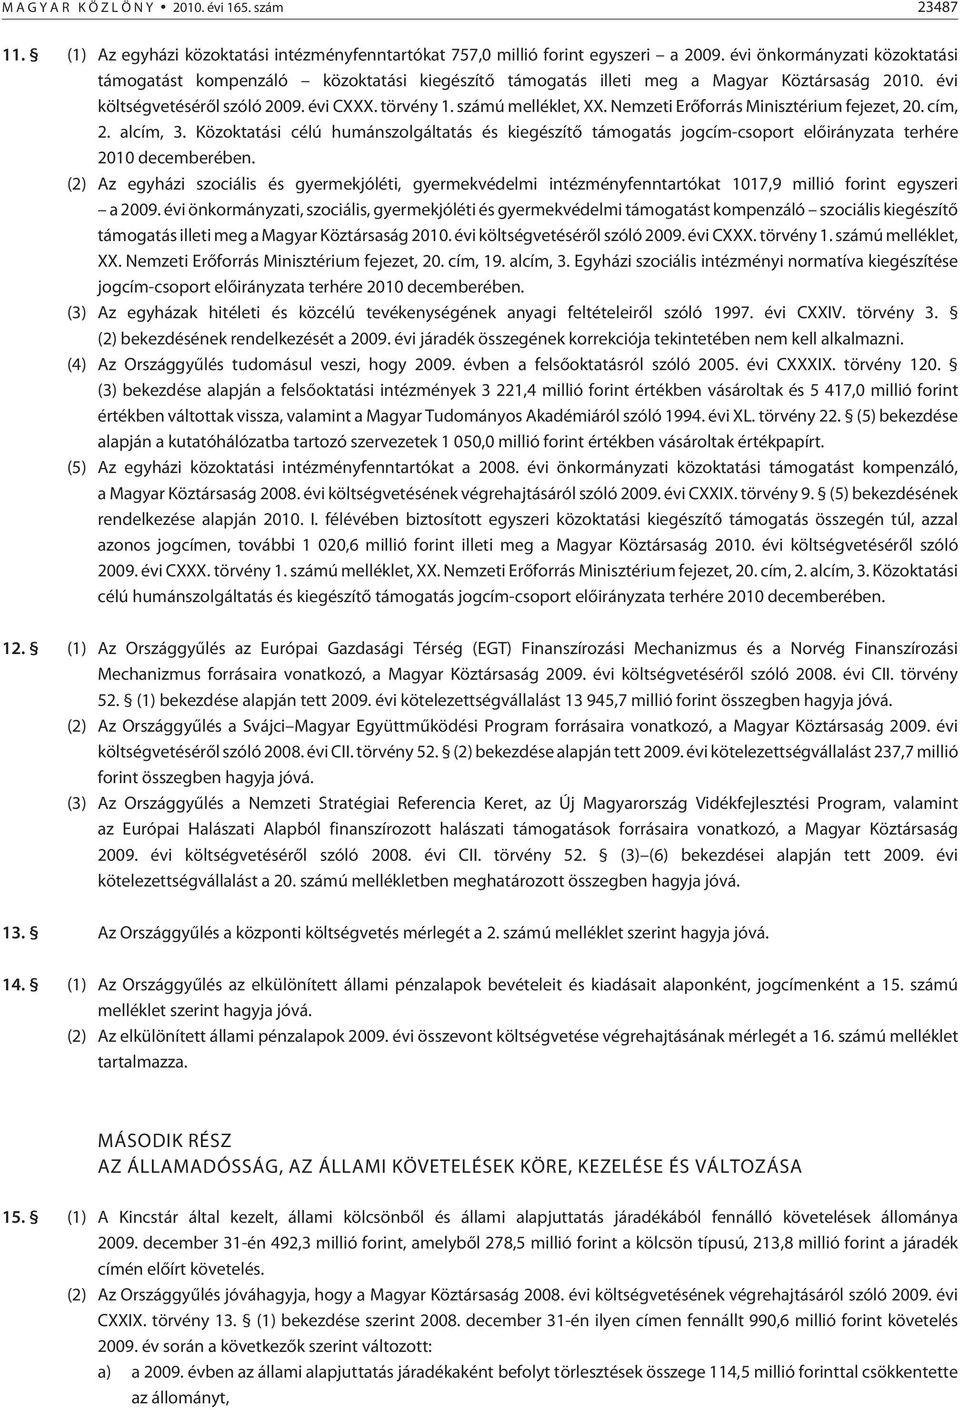 Nemzeti Erõforrás Minisztérium fejezet, 20. cím, 2. alcím, 3. Közoktatási célú humánszolgáltatás és kiegészítõ támogatás jogcím-csoport elõirányzata terhére 2010 decemberében.